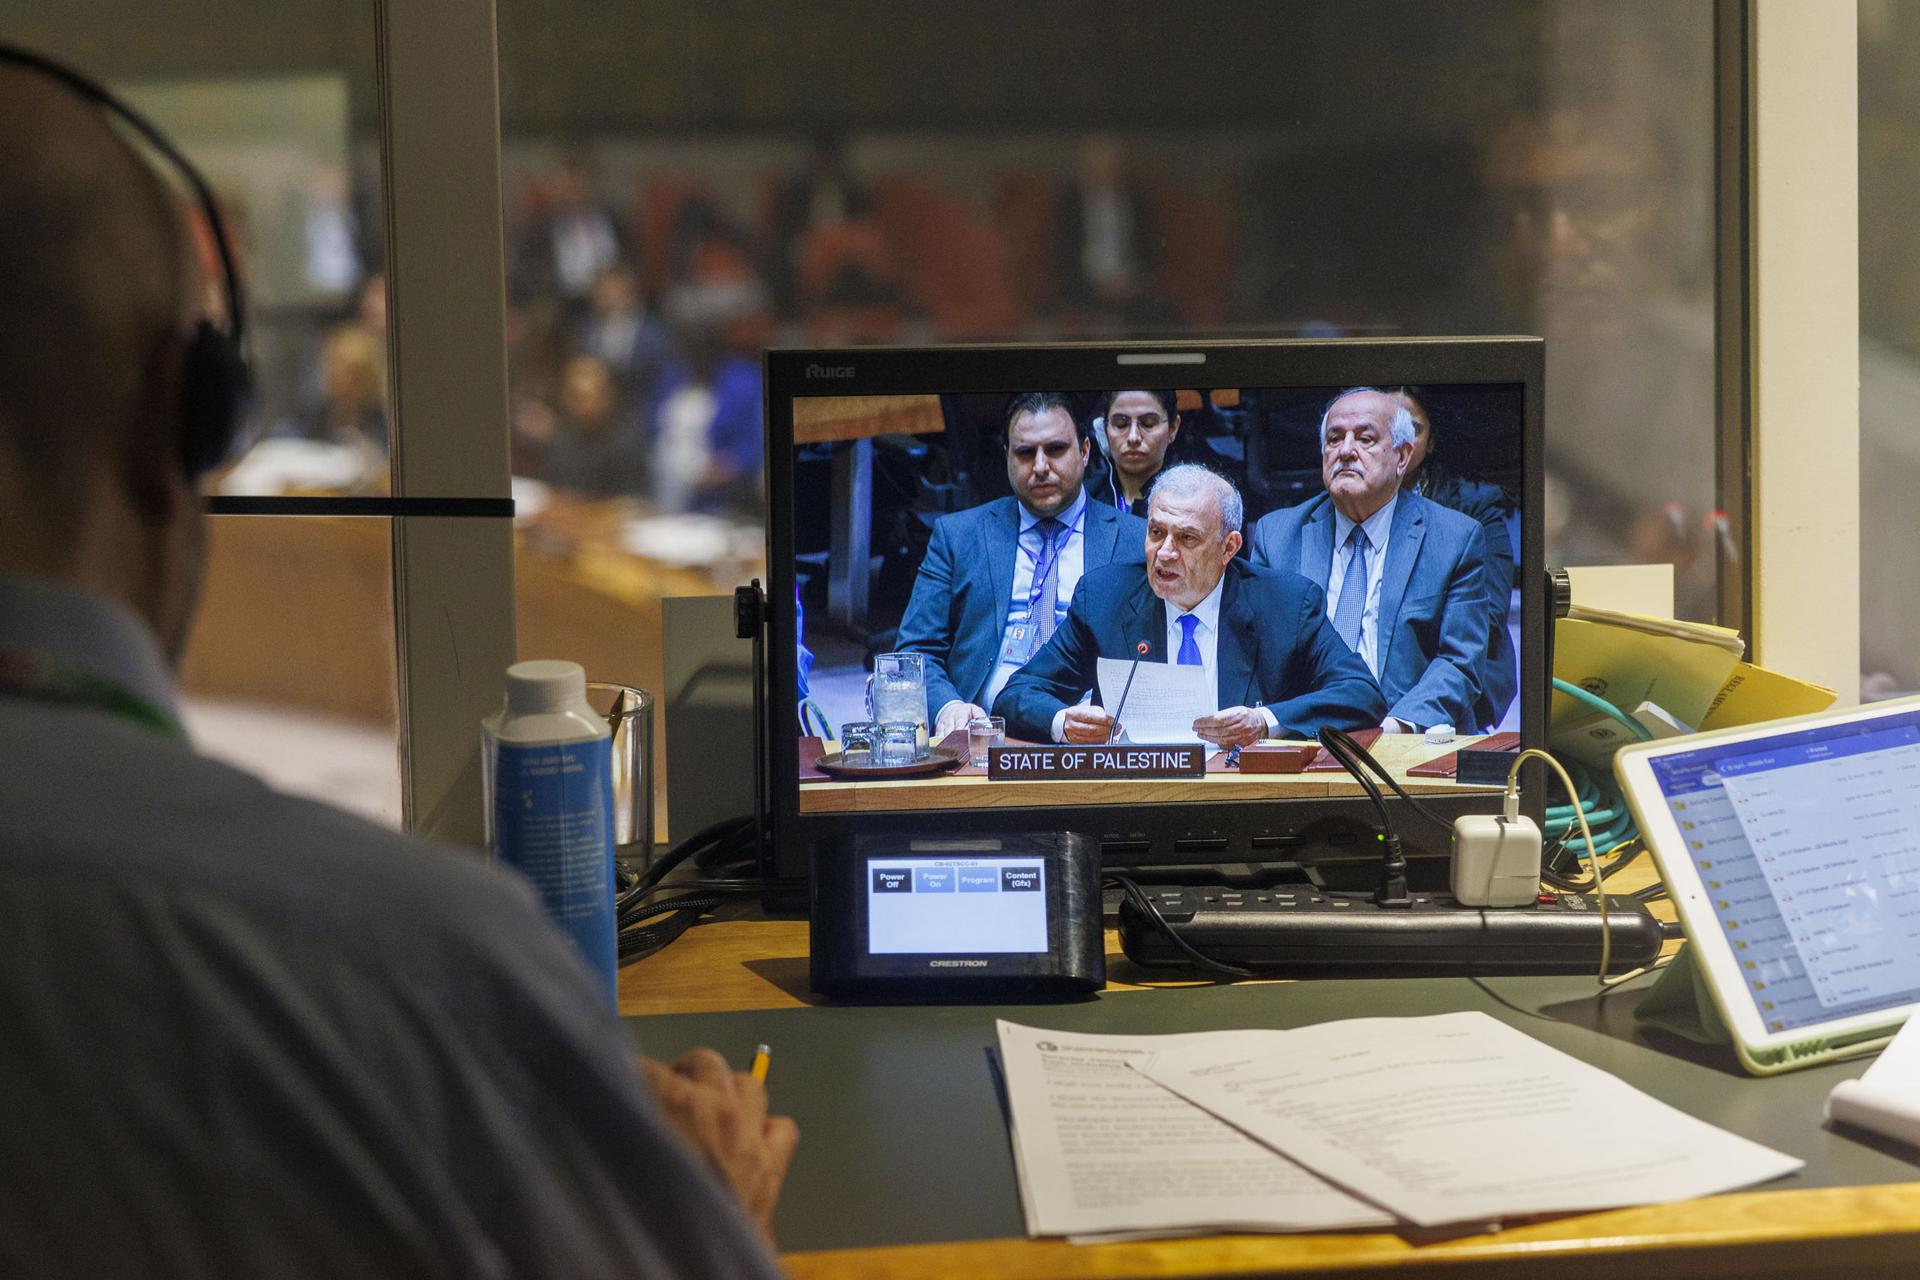 El representante de la Autoridad Palestina enviado este jueves a la ONU, Ziad Abu Amr.